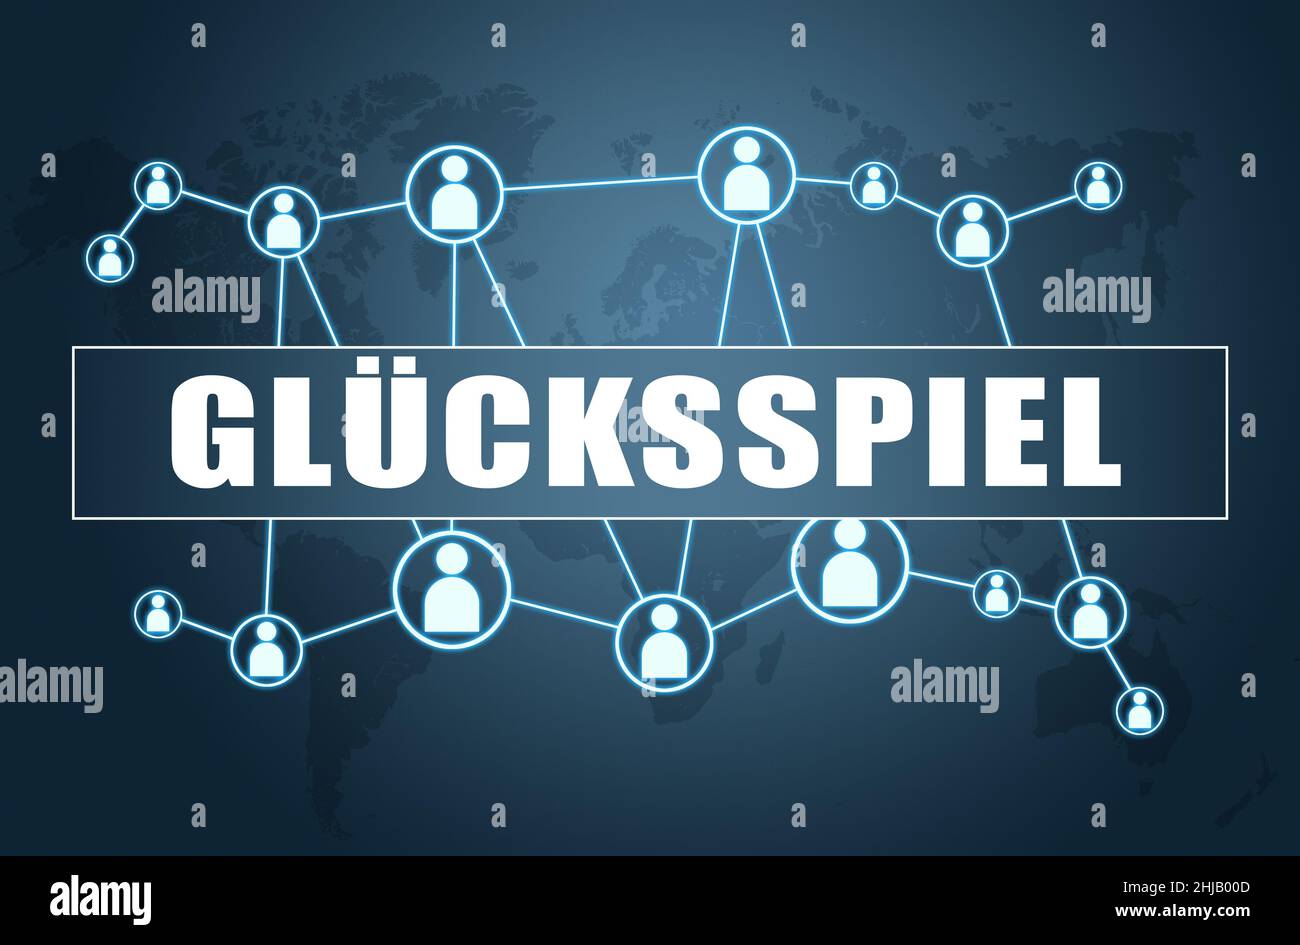 Gluecksspiel - parola tedesca per il gioco d'azzardo o il gioco d'azzardo - testo concetto su sfondo blu con mappa del mondo e icone sociali. Foto Stock